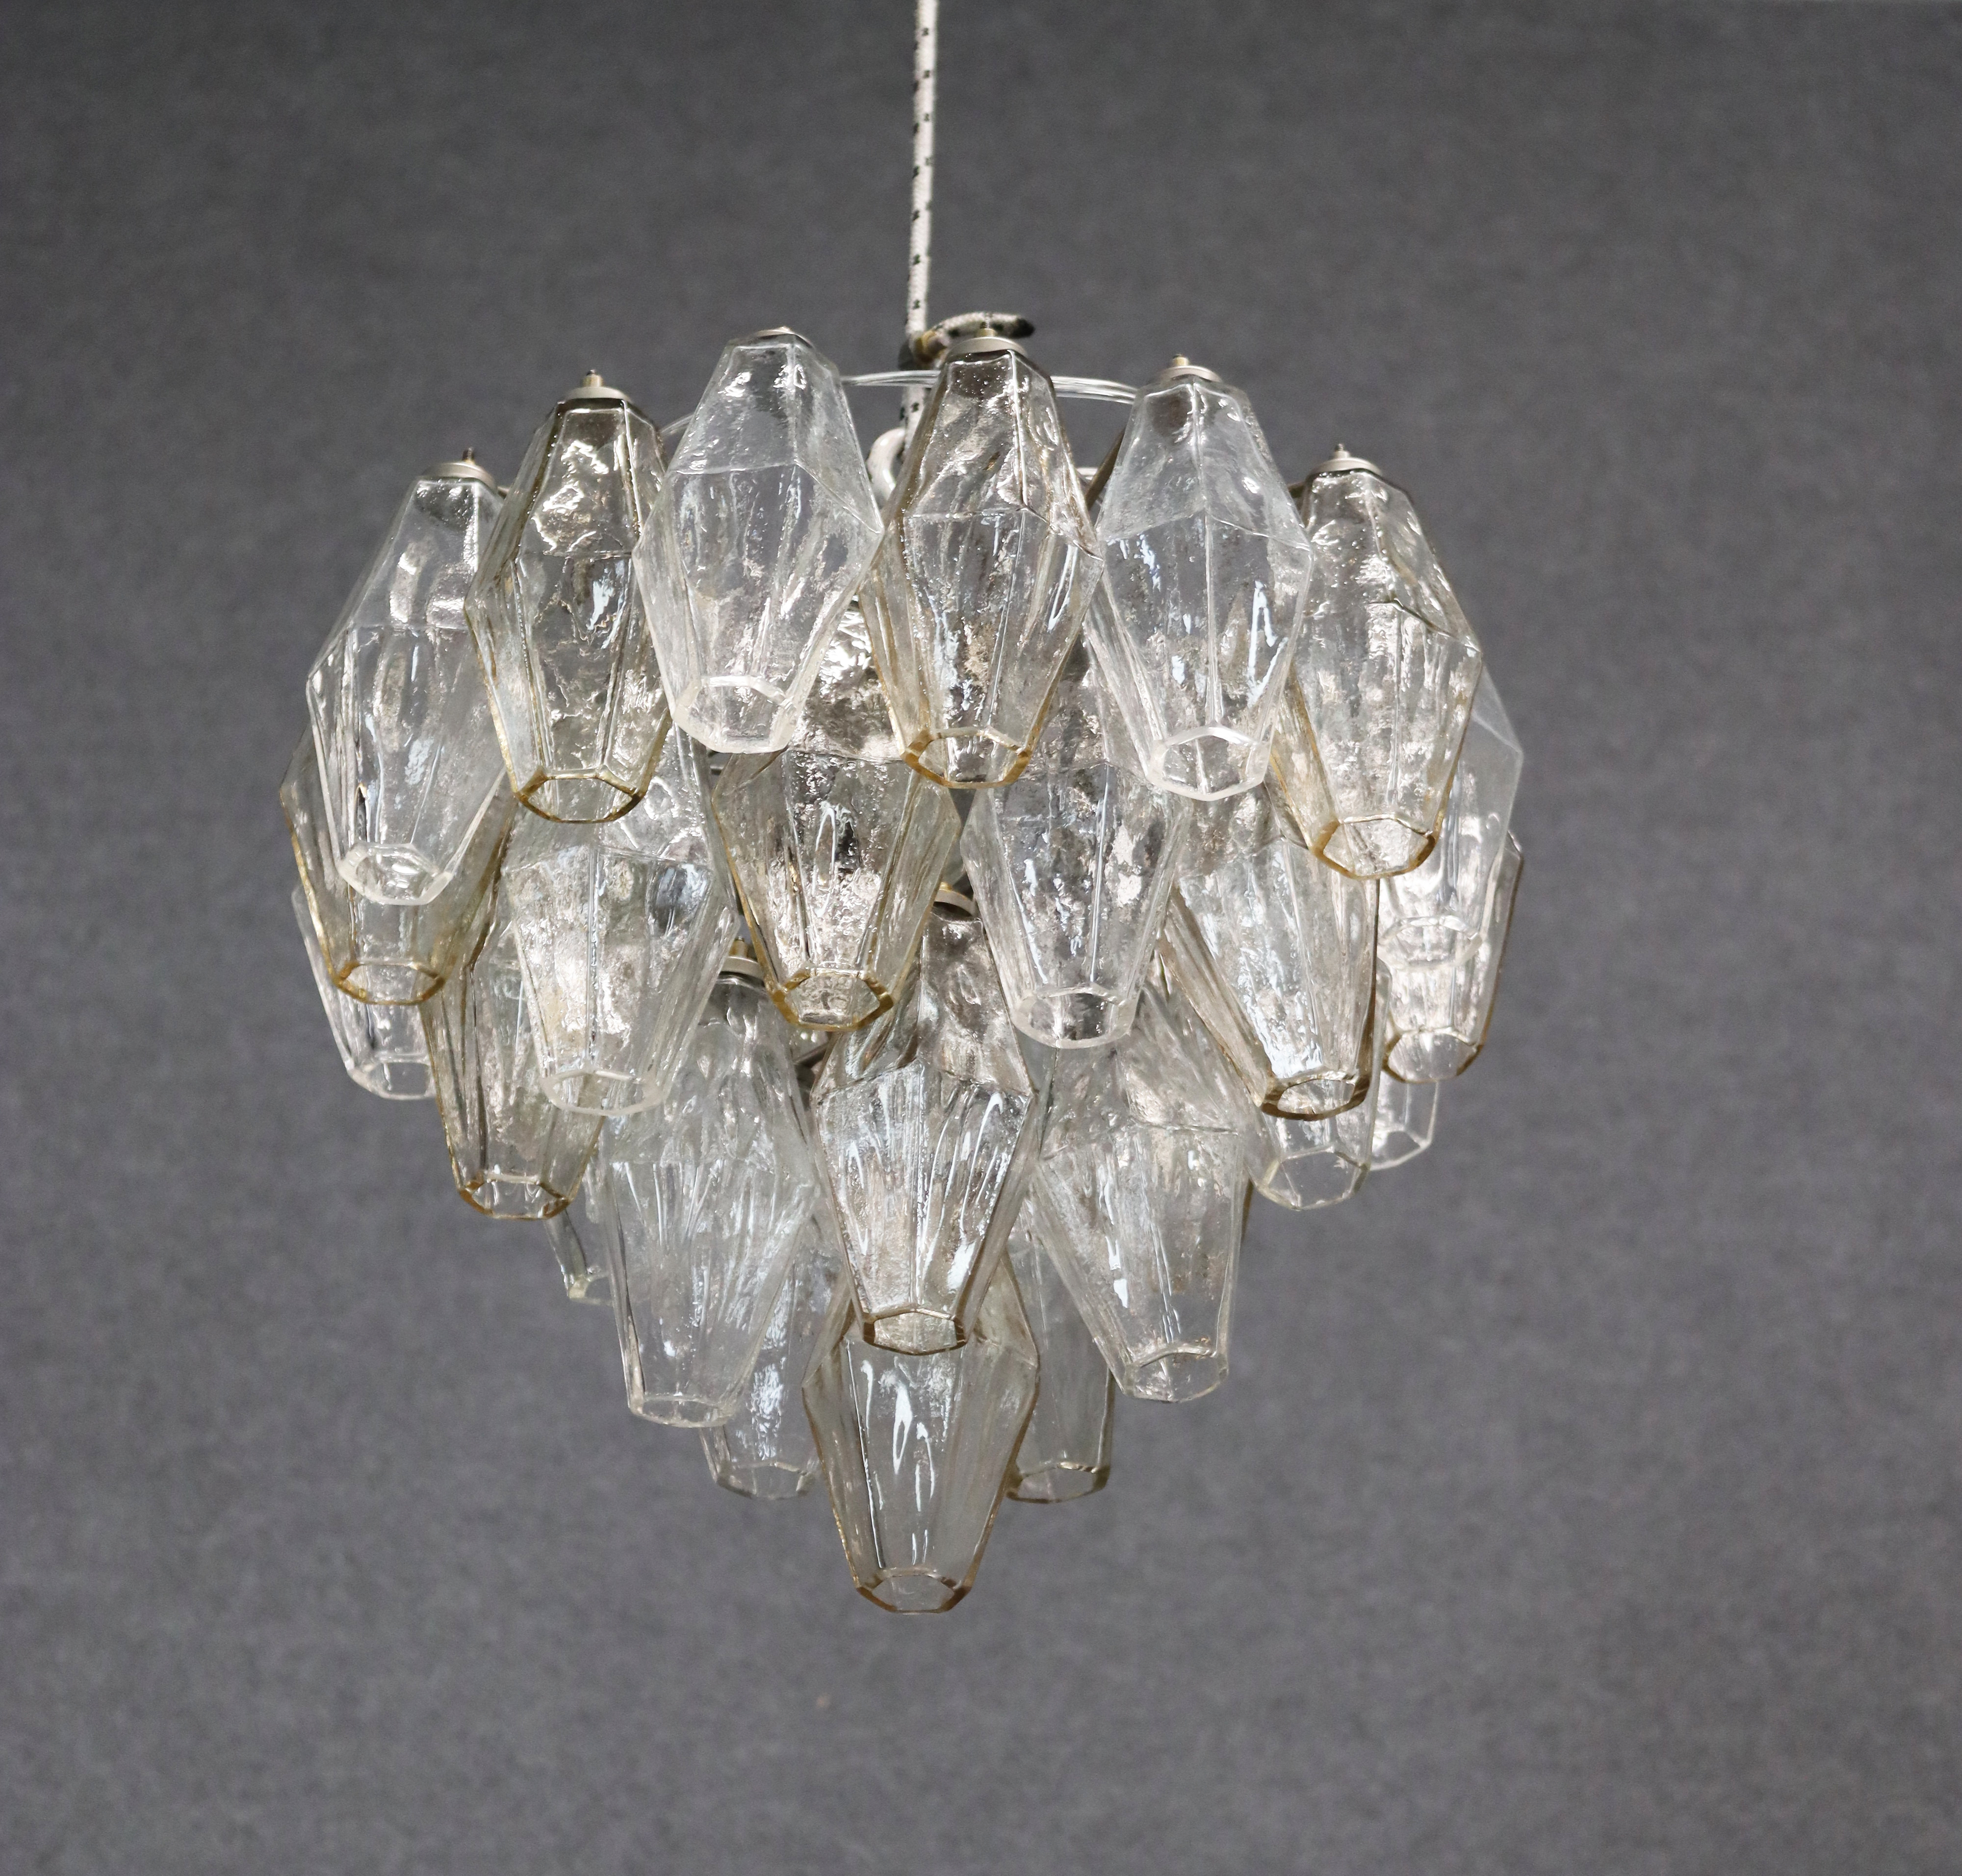 CARLO SCARPA for VENINI. Poliedri chandelier - Image 2 of 3